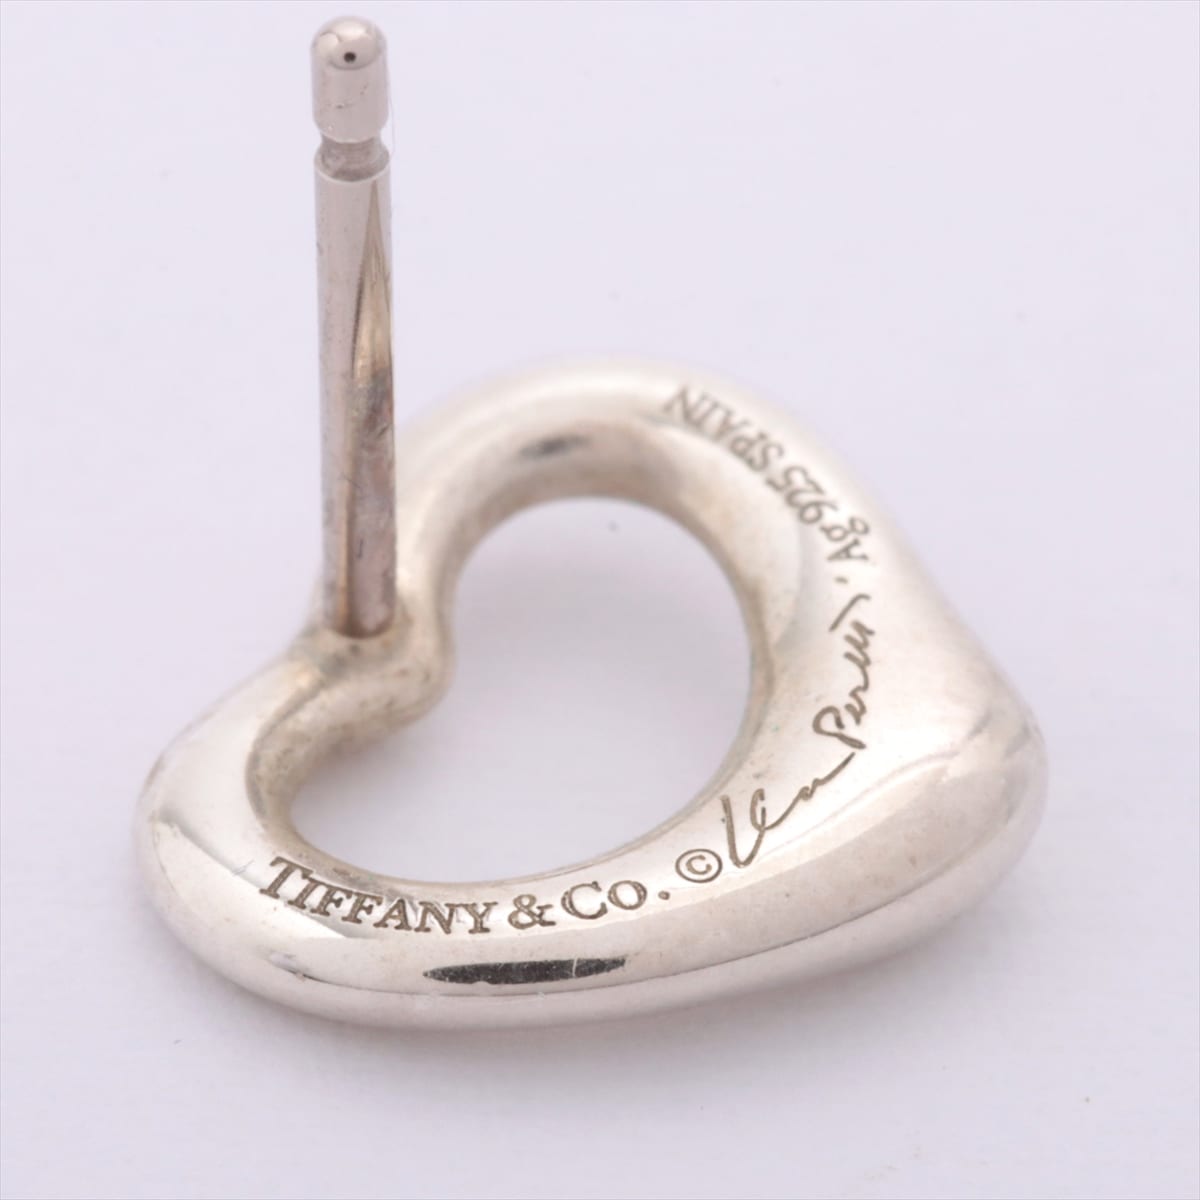 Tiffany Open Heart Piercing jewelry (for both ears) 925 2.2g Silver